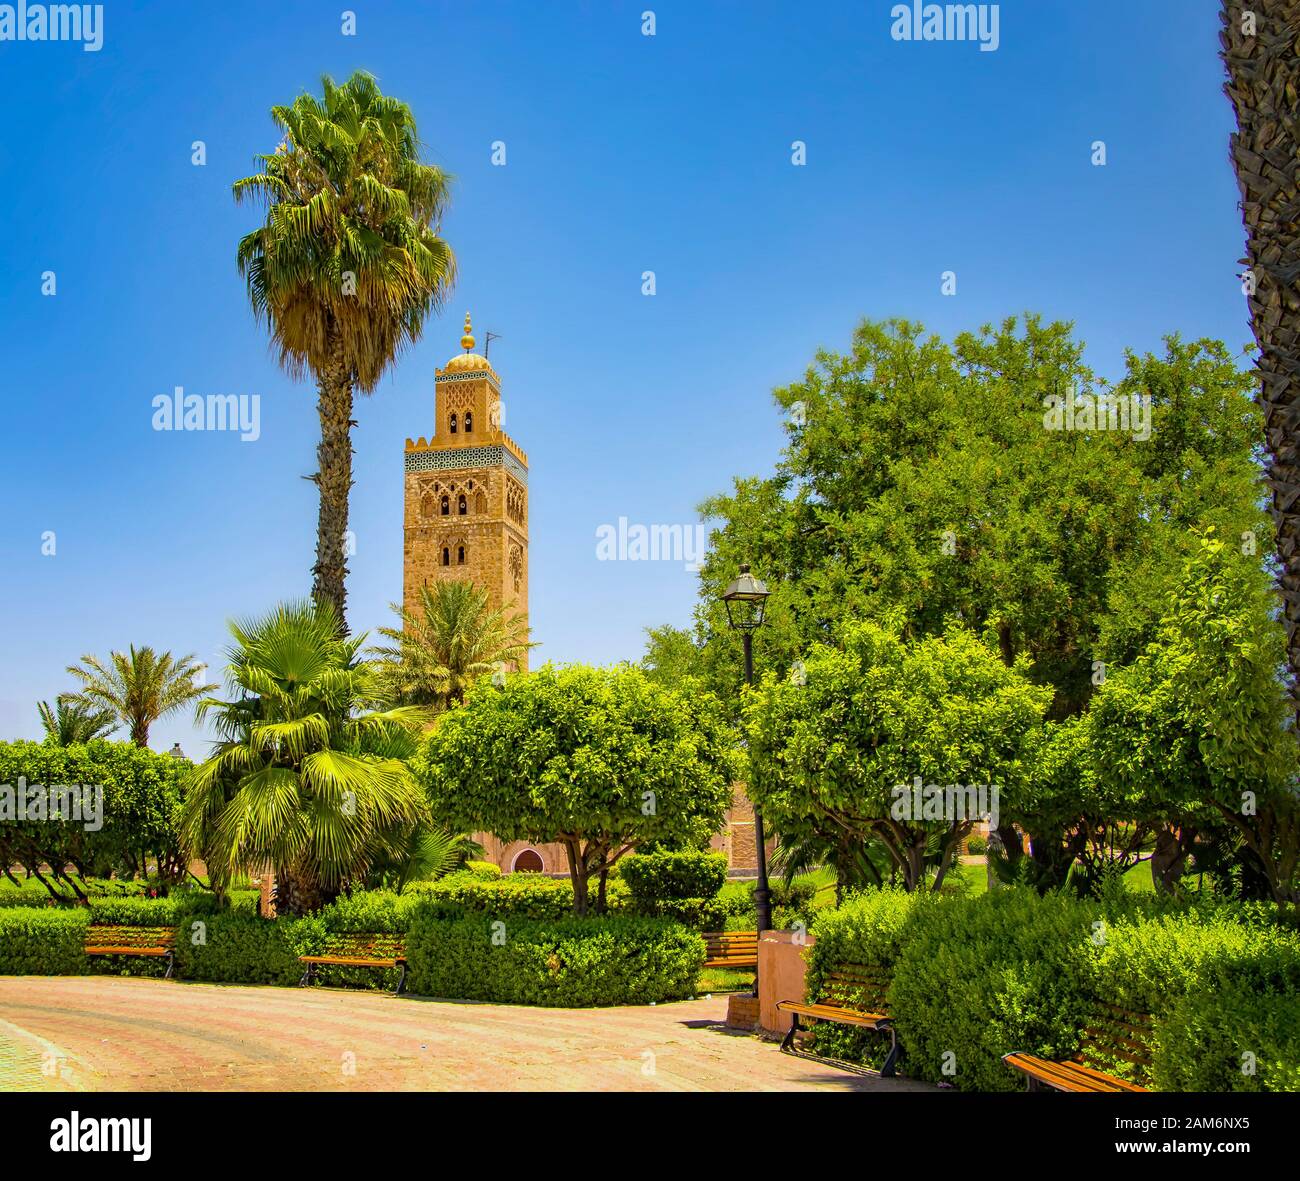 La Moschea di Koutoubia minaret al quartiere della medina di Marrakech, Marocco. C'è un bellissimo giardino verde con palme. Blue Sky è in background. Foto Stock